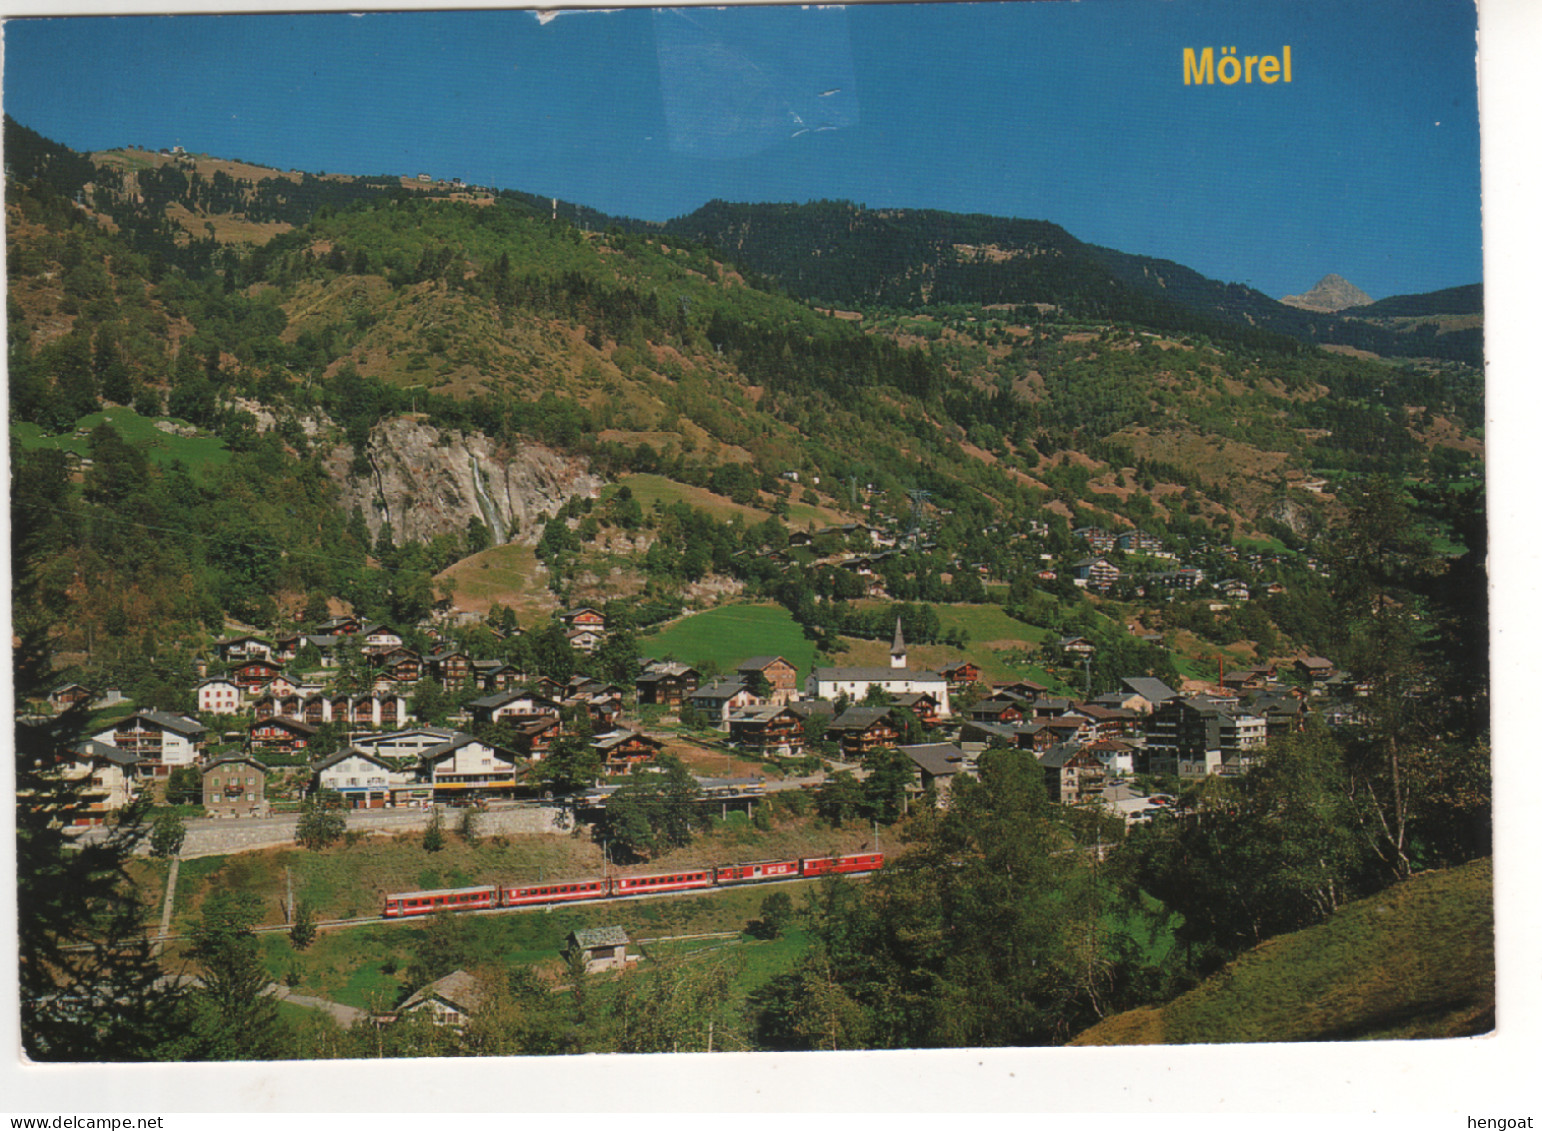 Timbre , Stamp " EUROPA : Zoodiaque , Taureau " Sur CP , Carte , Postcard Du 10/08/95 - Storia Postale